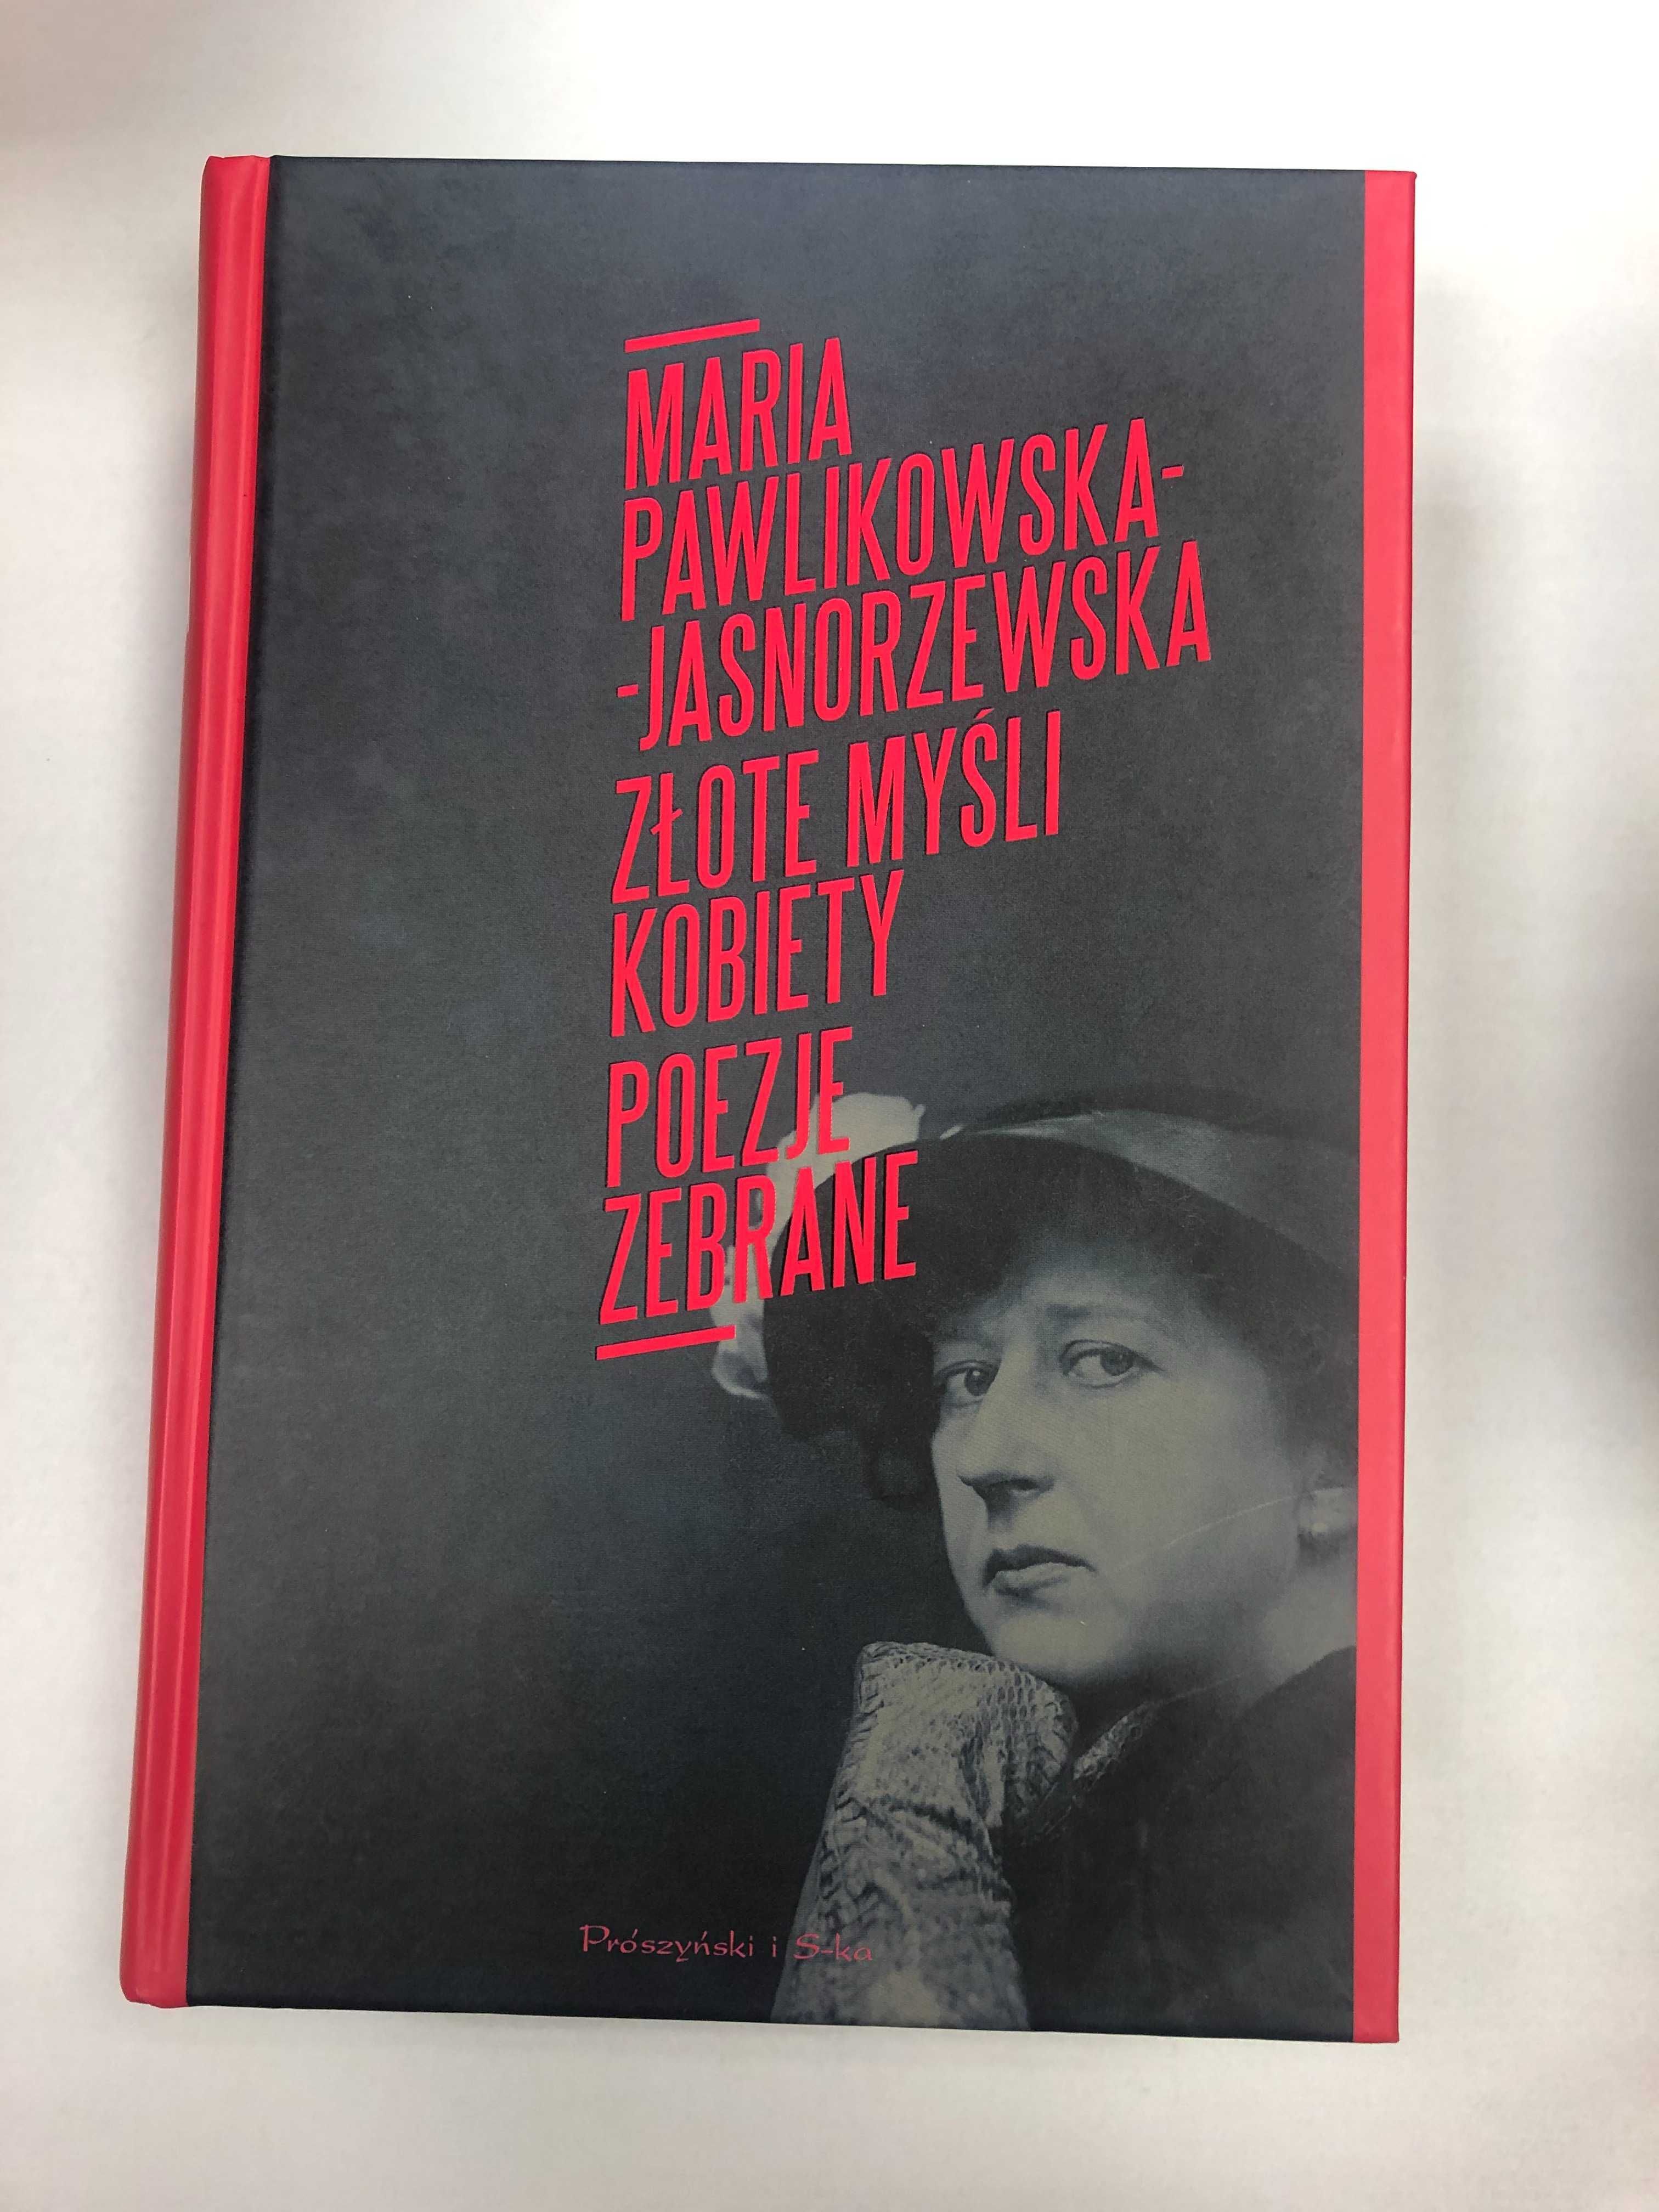 Pawlikowska Jasnorzewska Poezje zebrane Złote myśli kobiety Merlin Nye